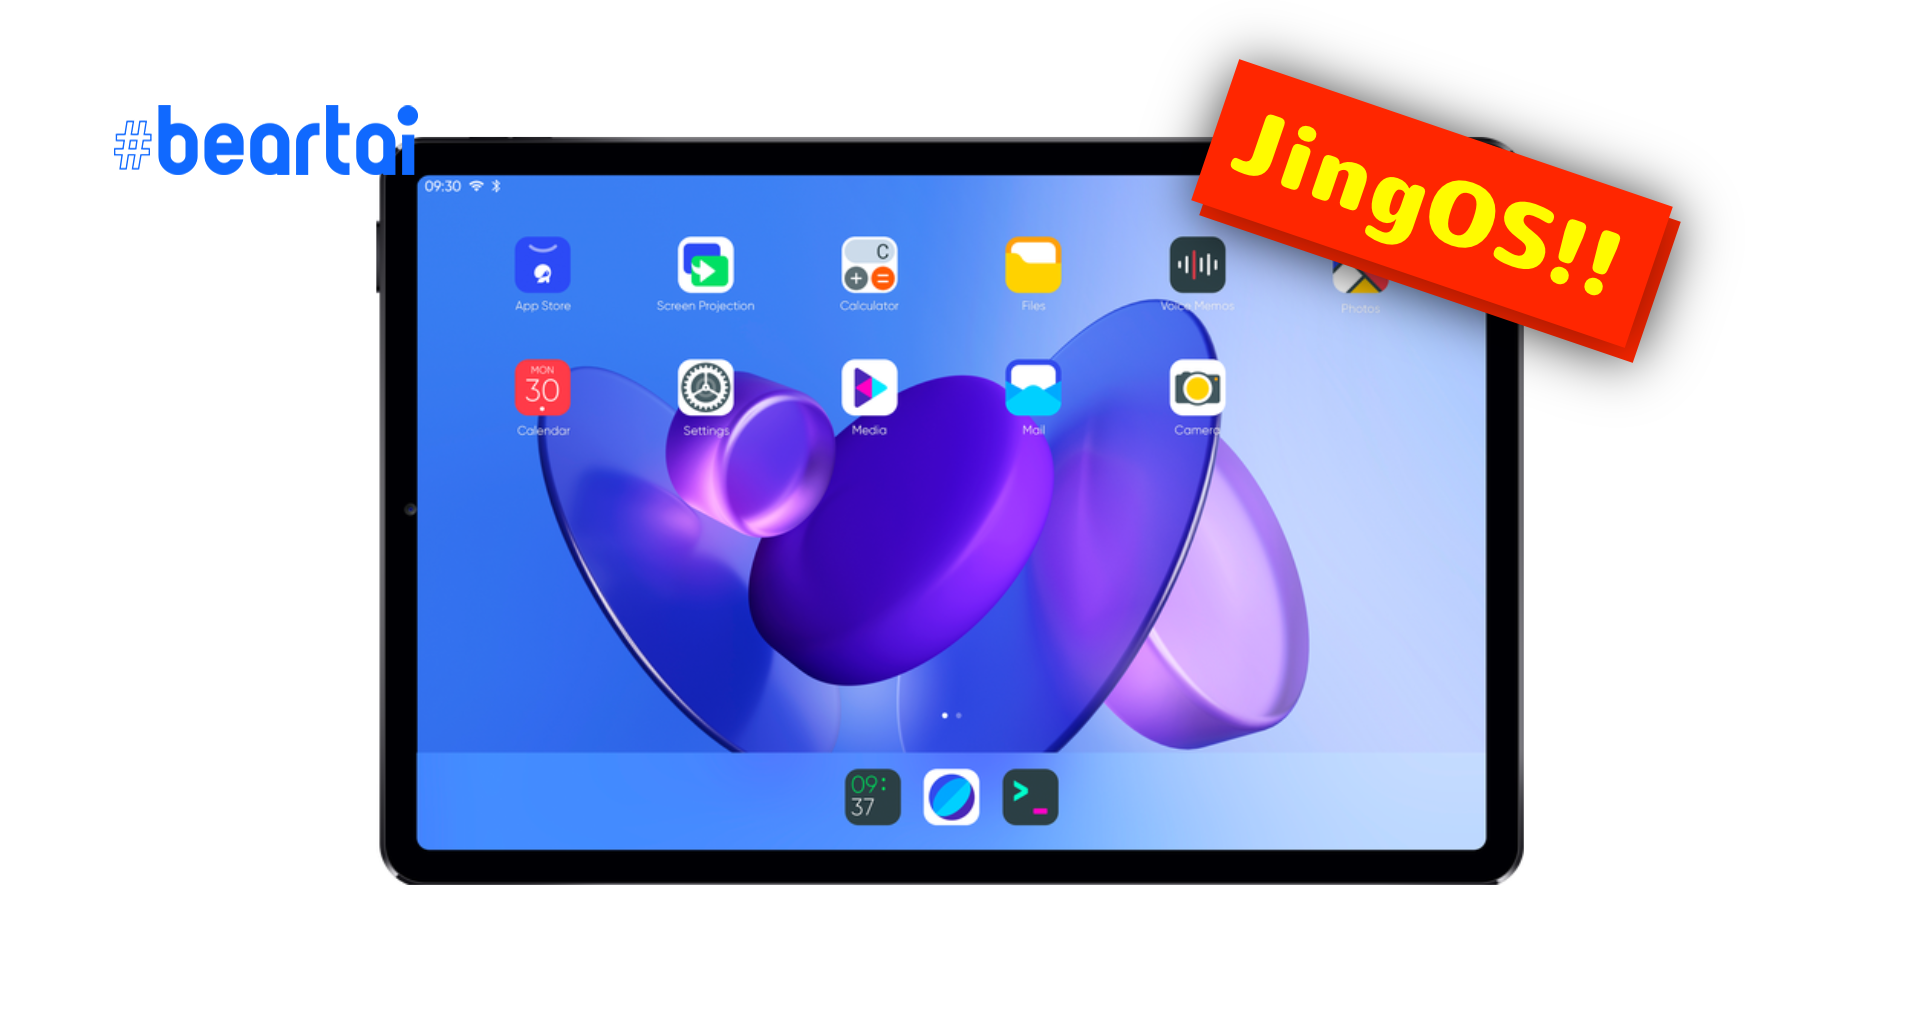 แรงบันดาลใจ จีนเปิดตัว JingOS ที่เหมือน iPadOS ทั้งหน้าตาและฟีเจอร์การใช้งาน